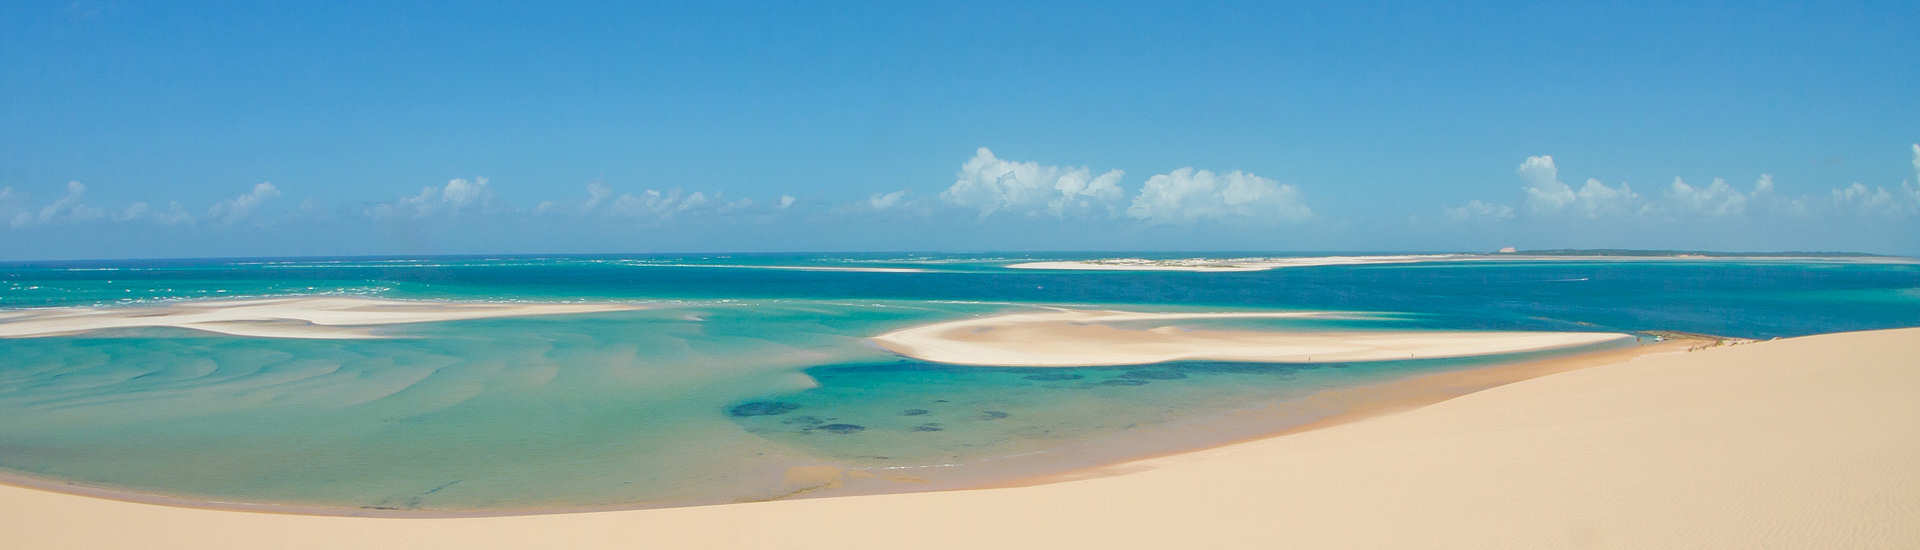 Bazaruto Archipel – Höchsten Sanddünen im Indischen Ozean  